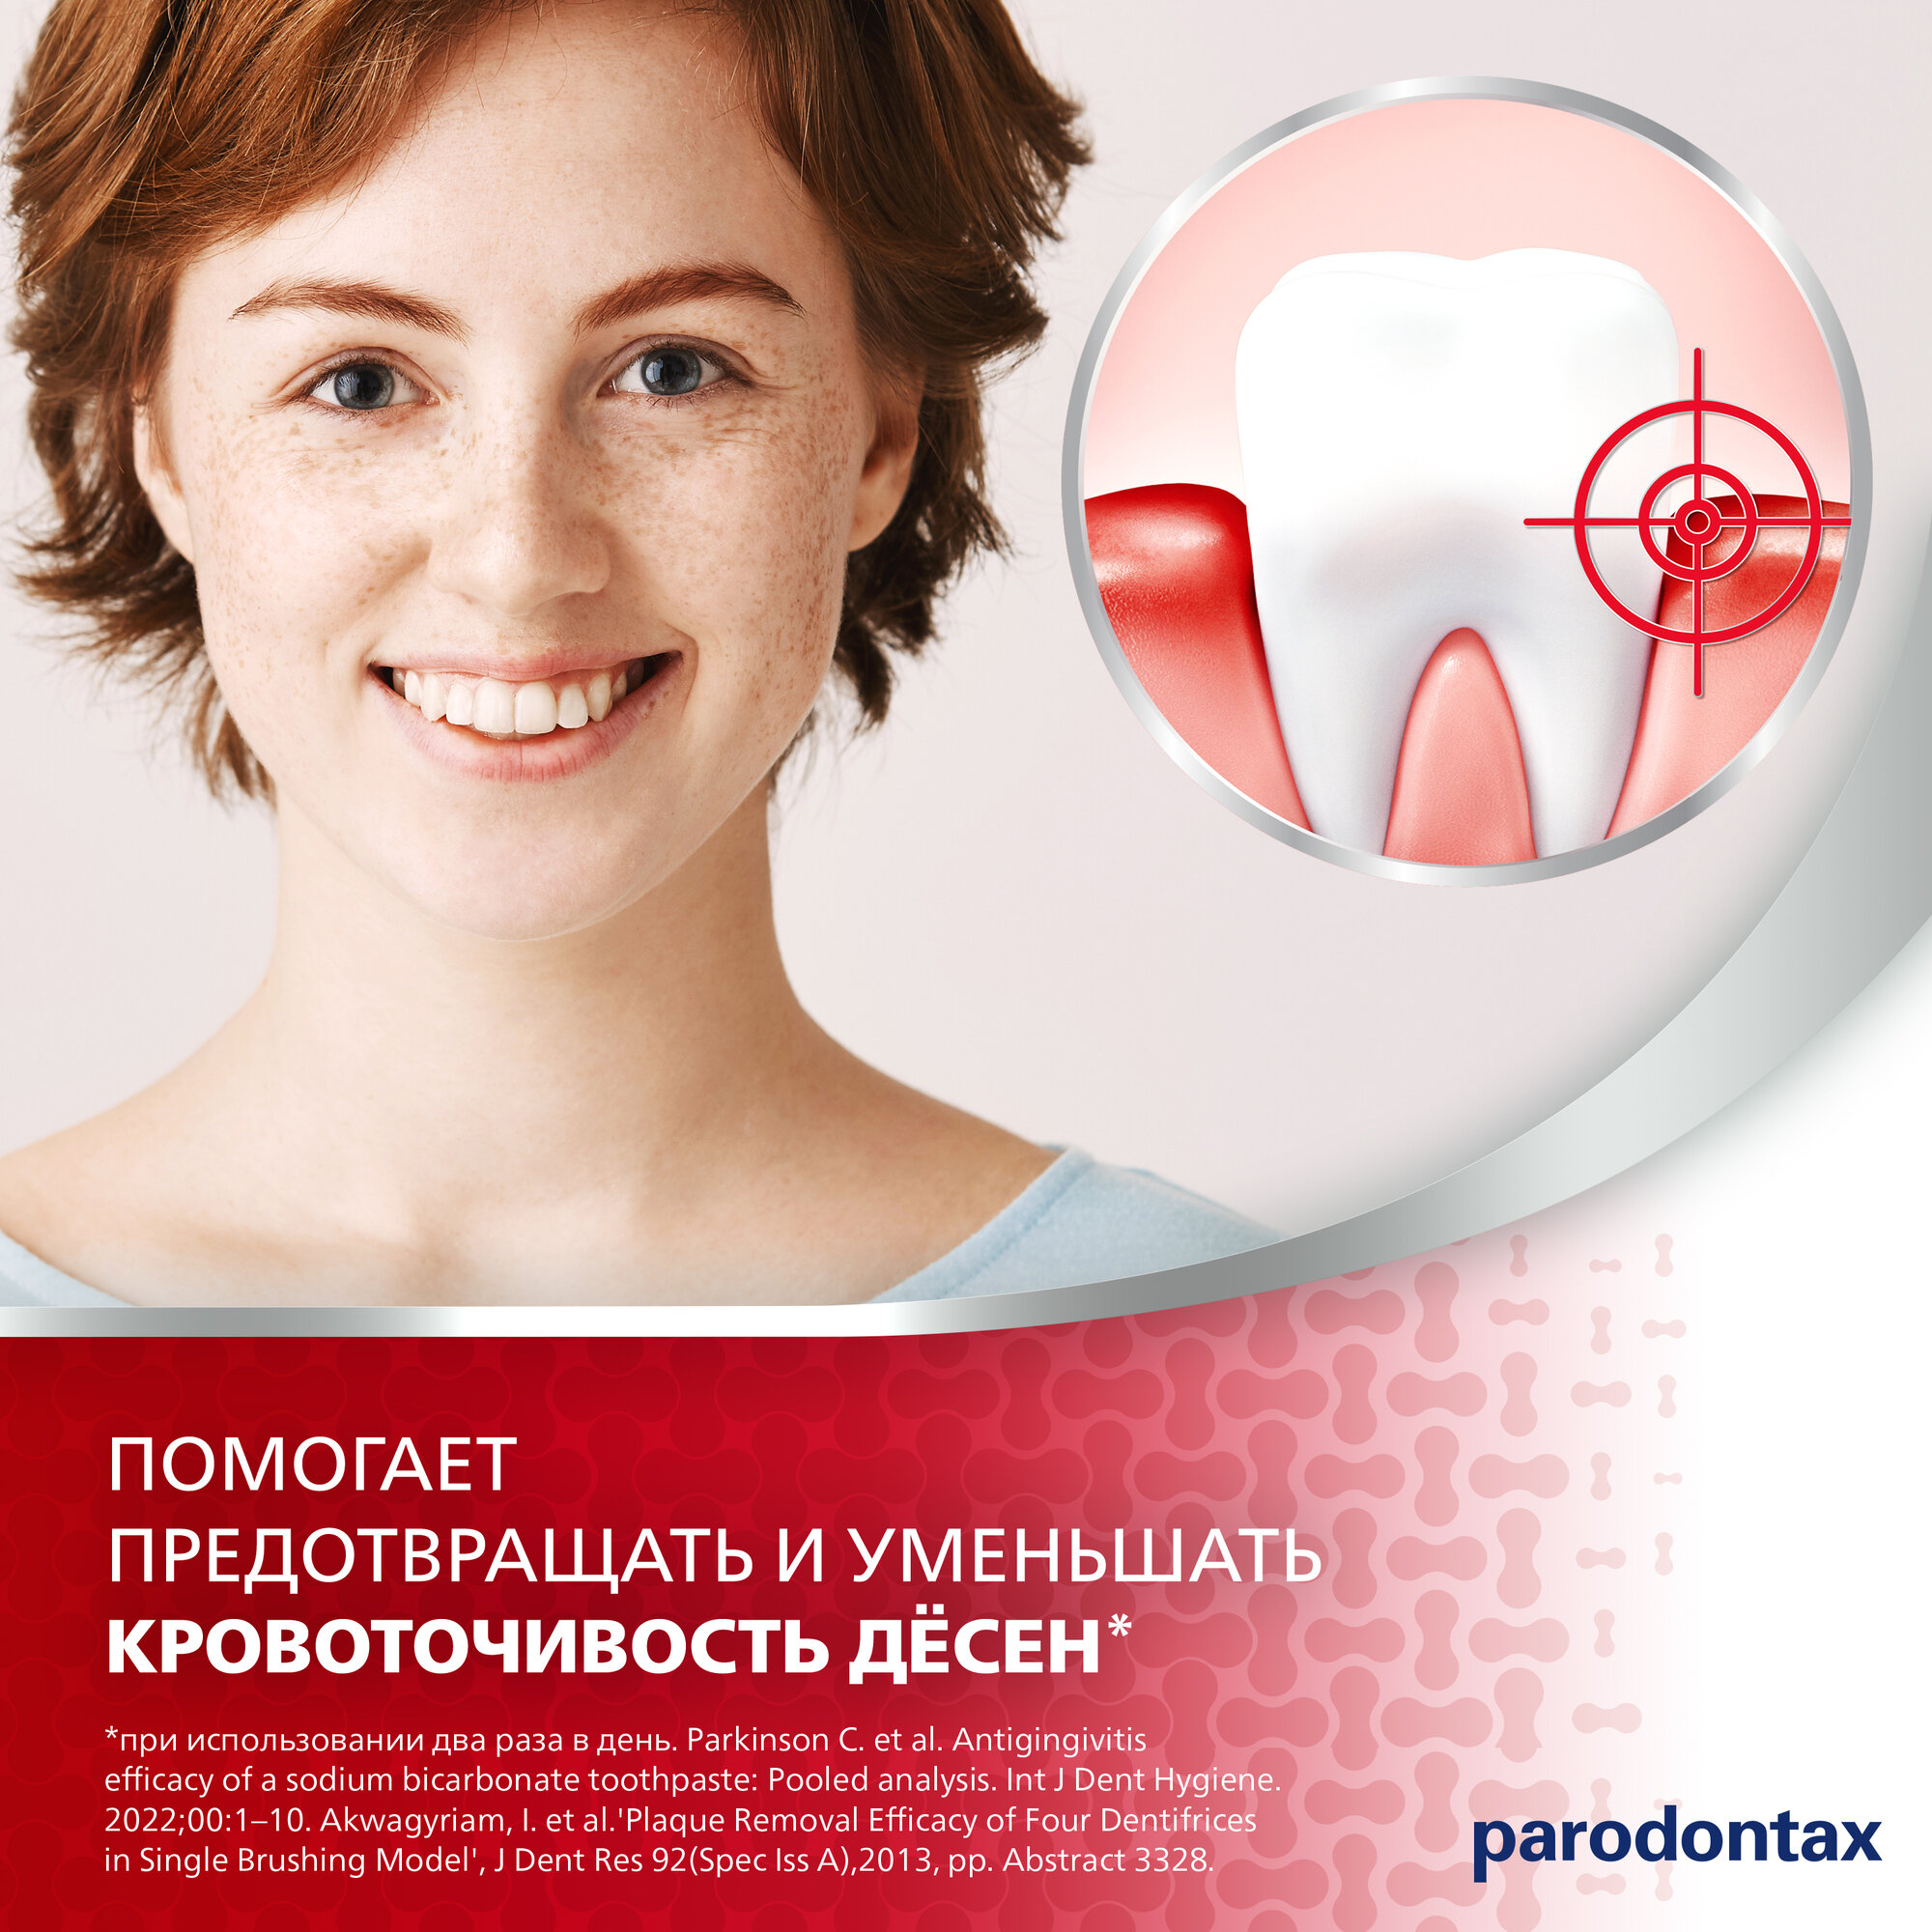 Зубная паста parodontax Отбеливающая от воспаления и кровоточивости десен против зубного налета и для восстановления естественной белизны зубов, 75 мл